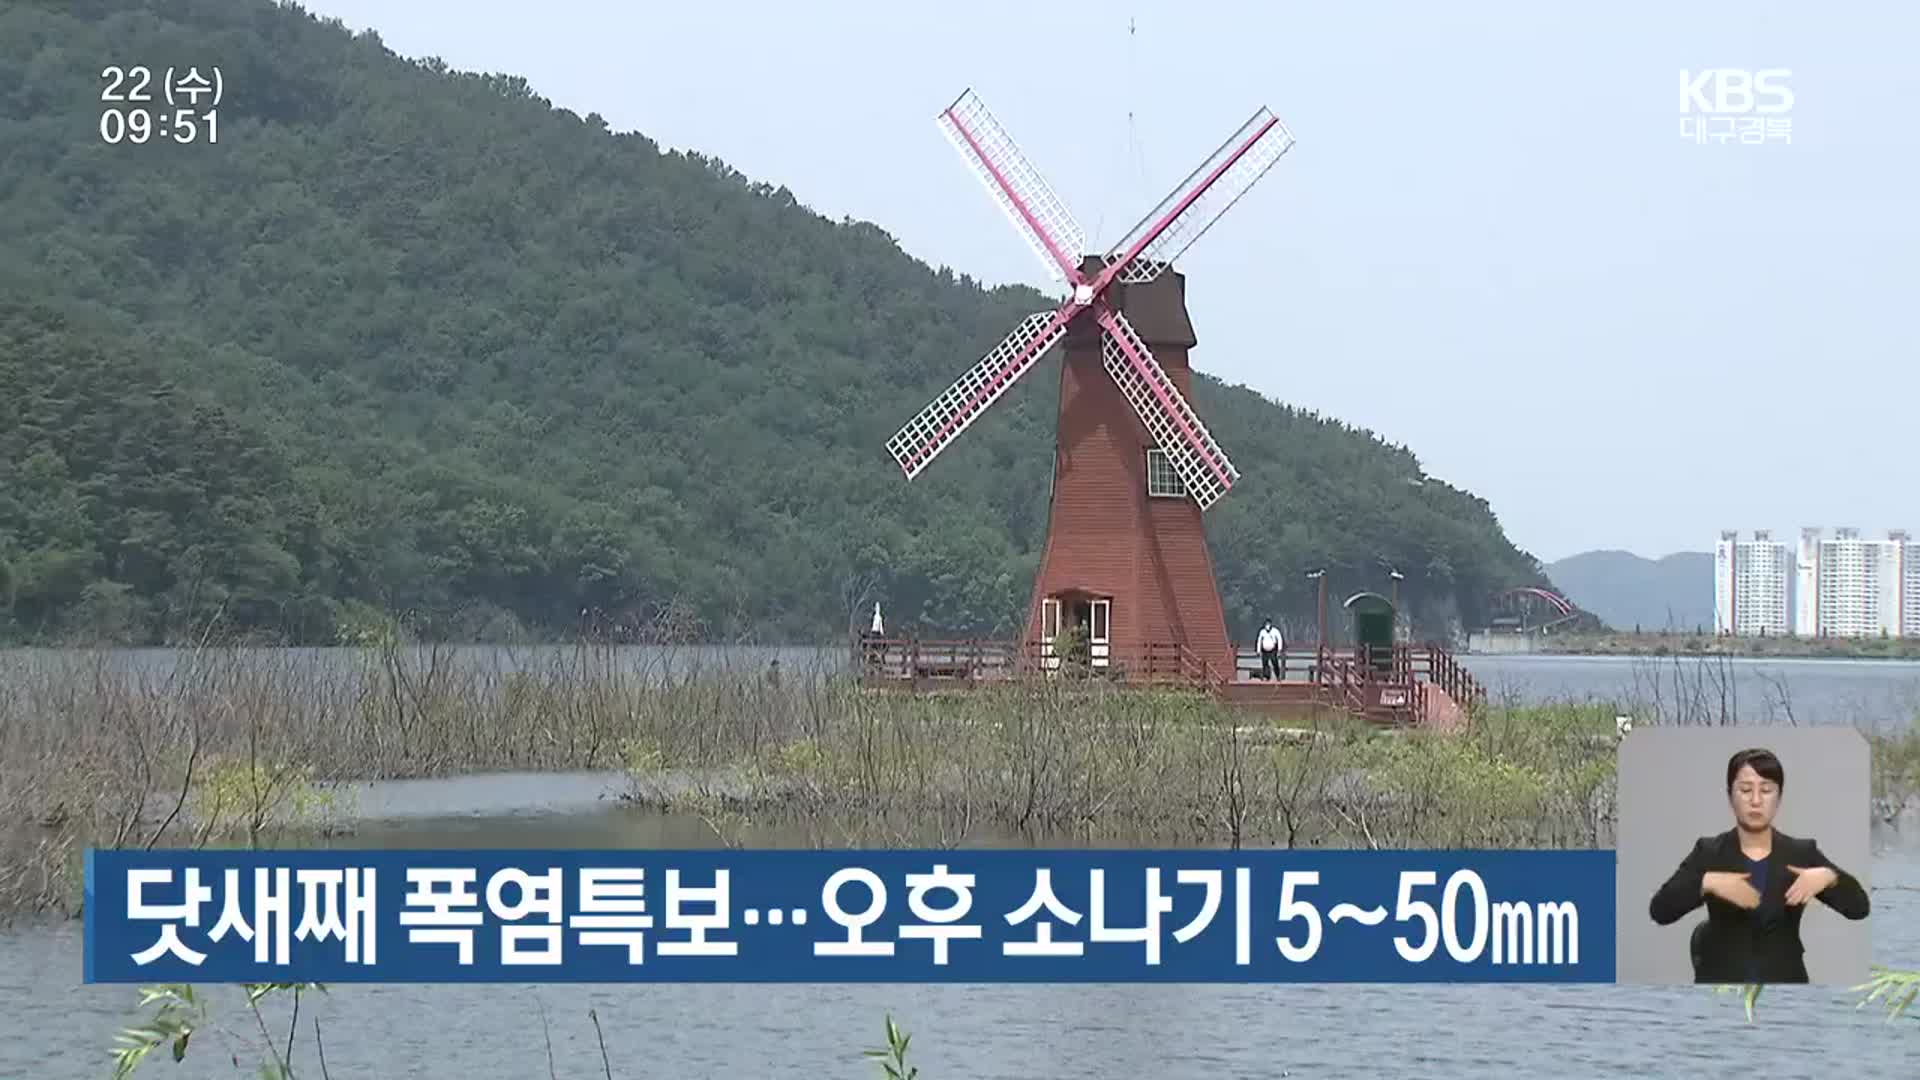 대구·경북 닷새째 폭염특보…오후 소나기 5~50mm